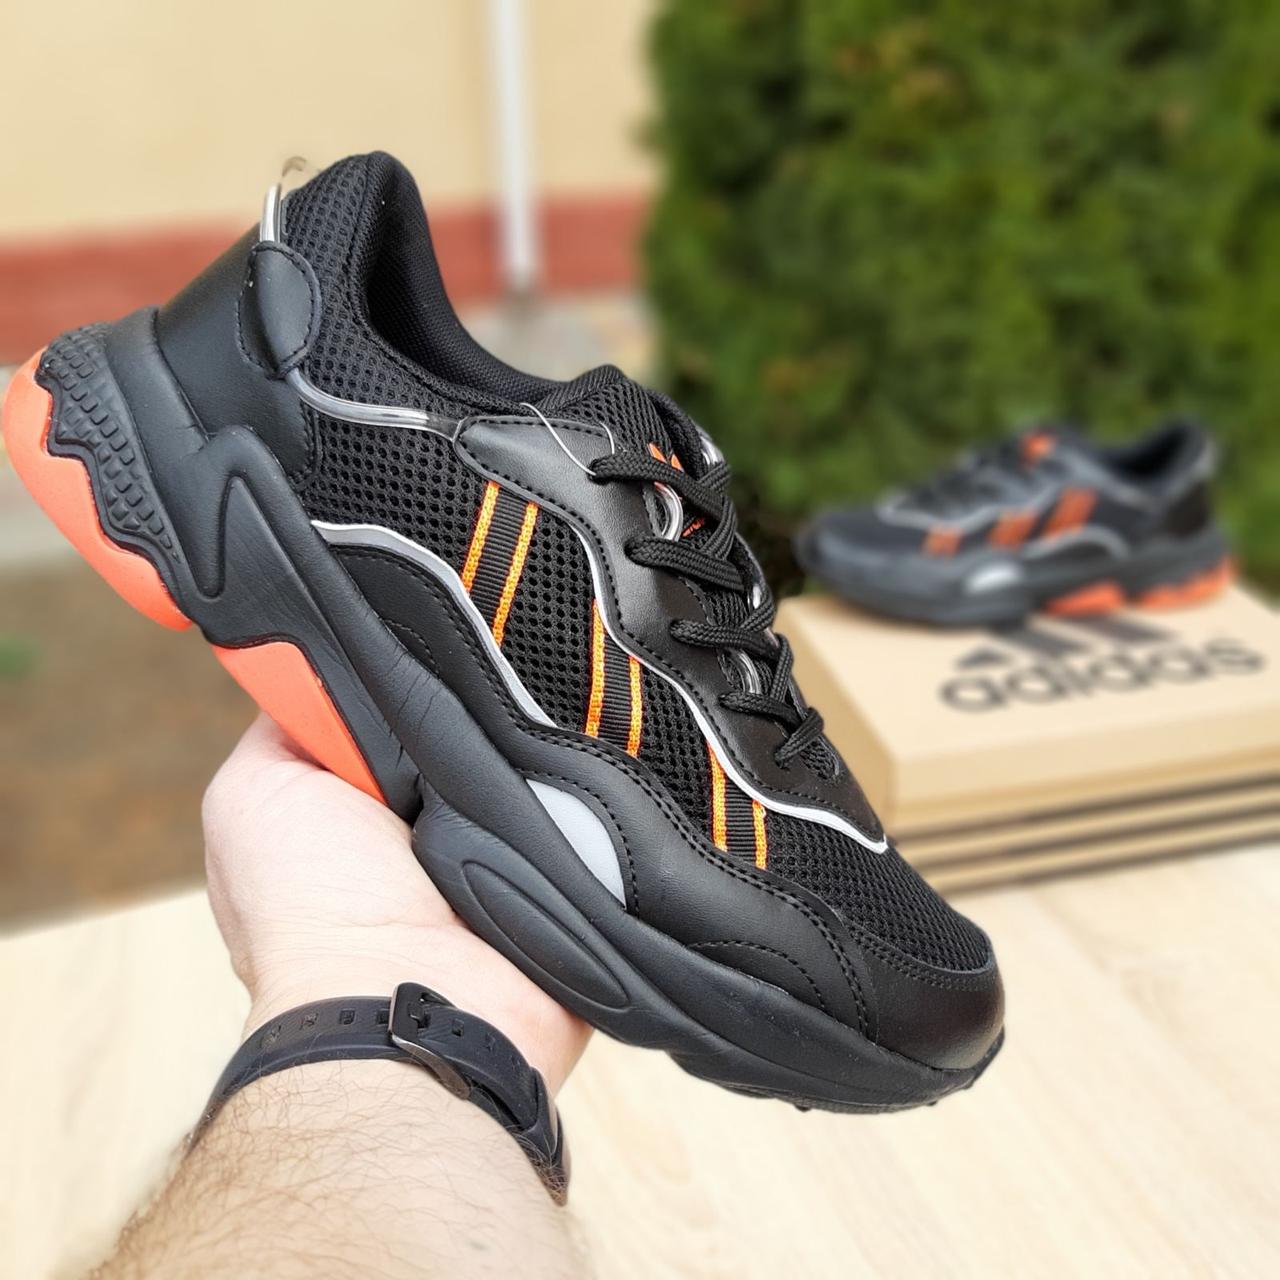 

Мужские кроссовки в стиле Adidas OZWEEGO, сетка, кожа, черные с оранжевым 43(27,5 см), размеры:43,44,45